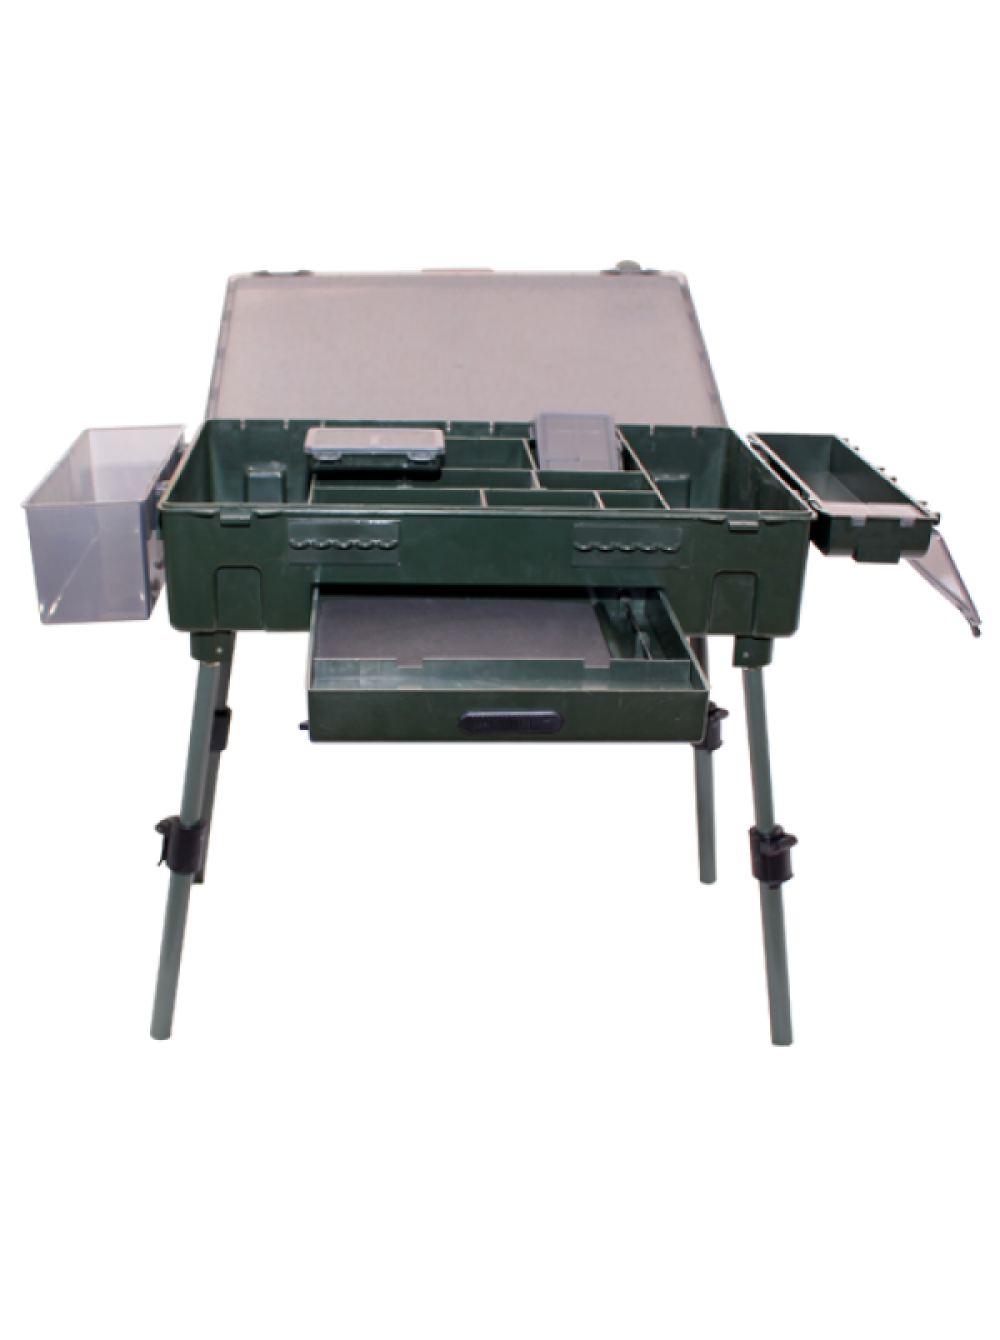 Карповый столик. Стол монтажный EASTSHARK Box-003. Карповый стол бокс EASTSHARK Box 003. EASTSHARK столик монтажный металл 47х31 HYA 001n. Столик карповый складной Jaxon rh-313 48х32х14см.